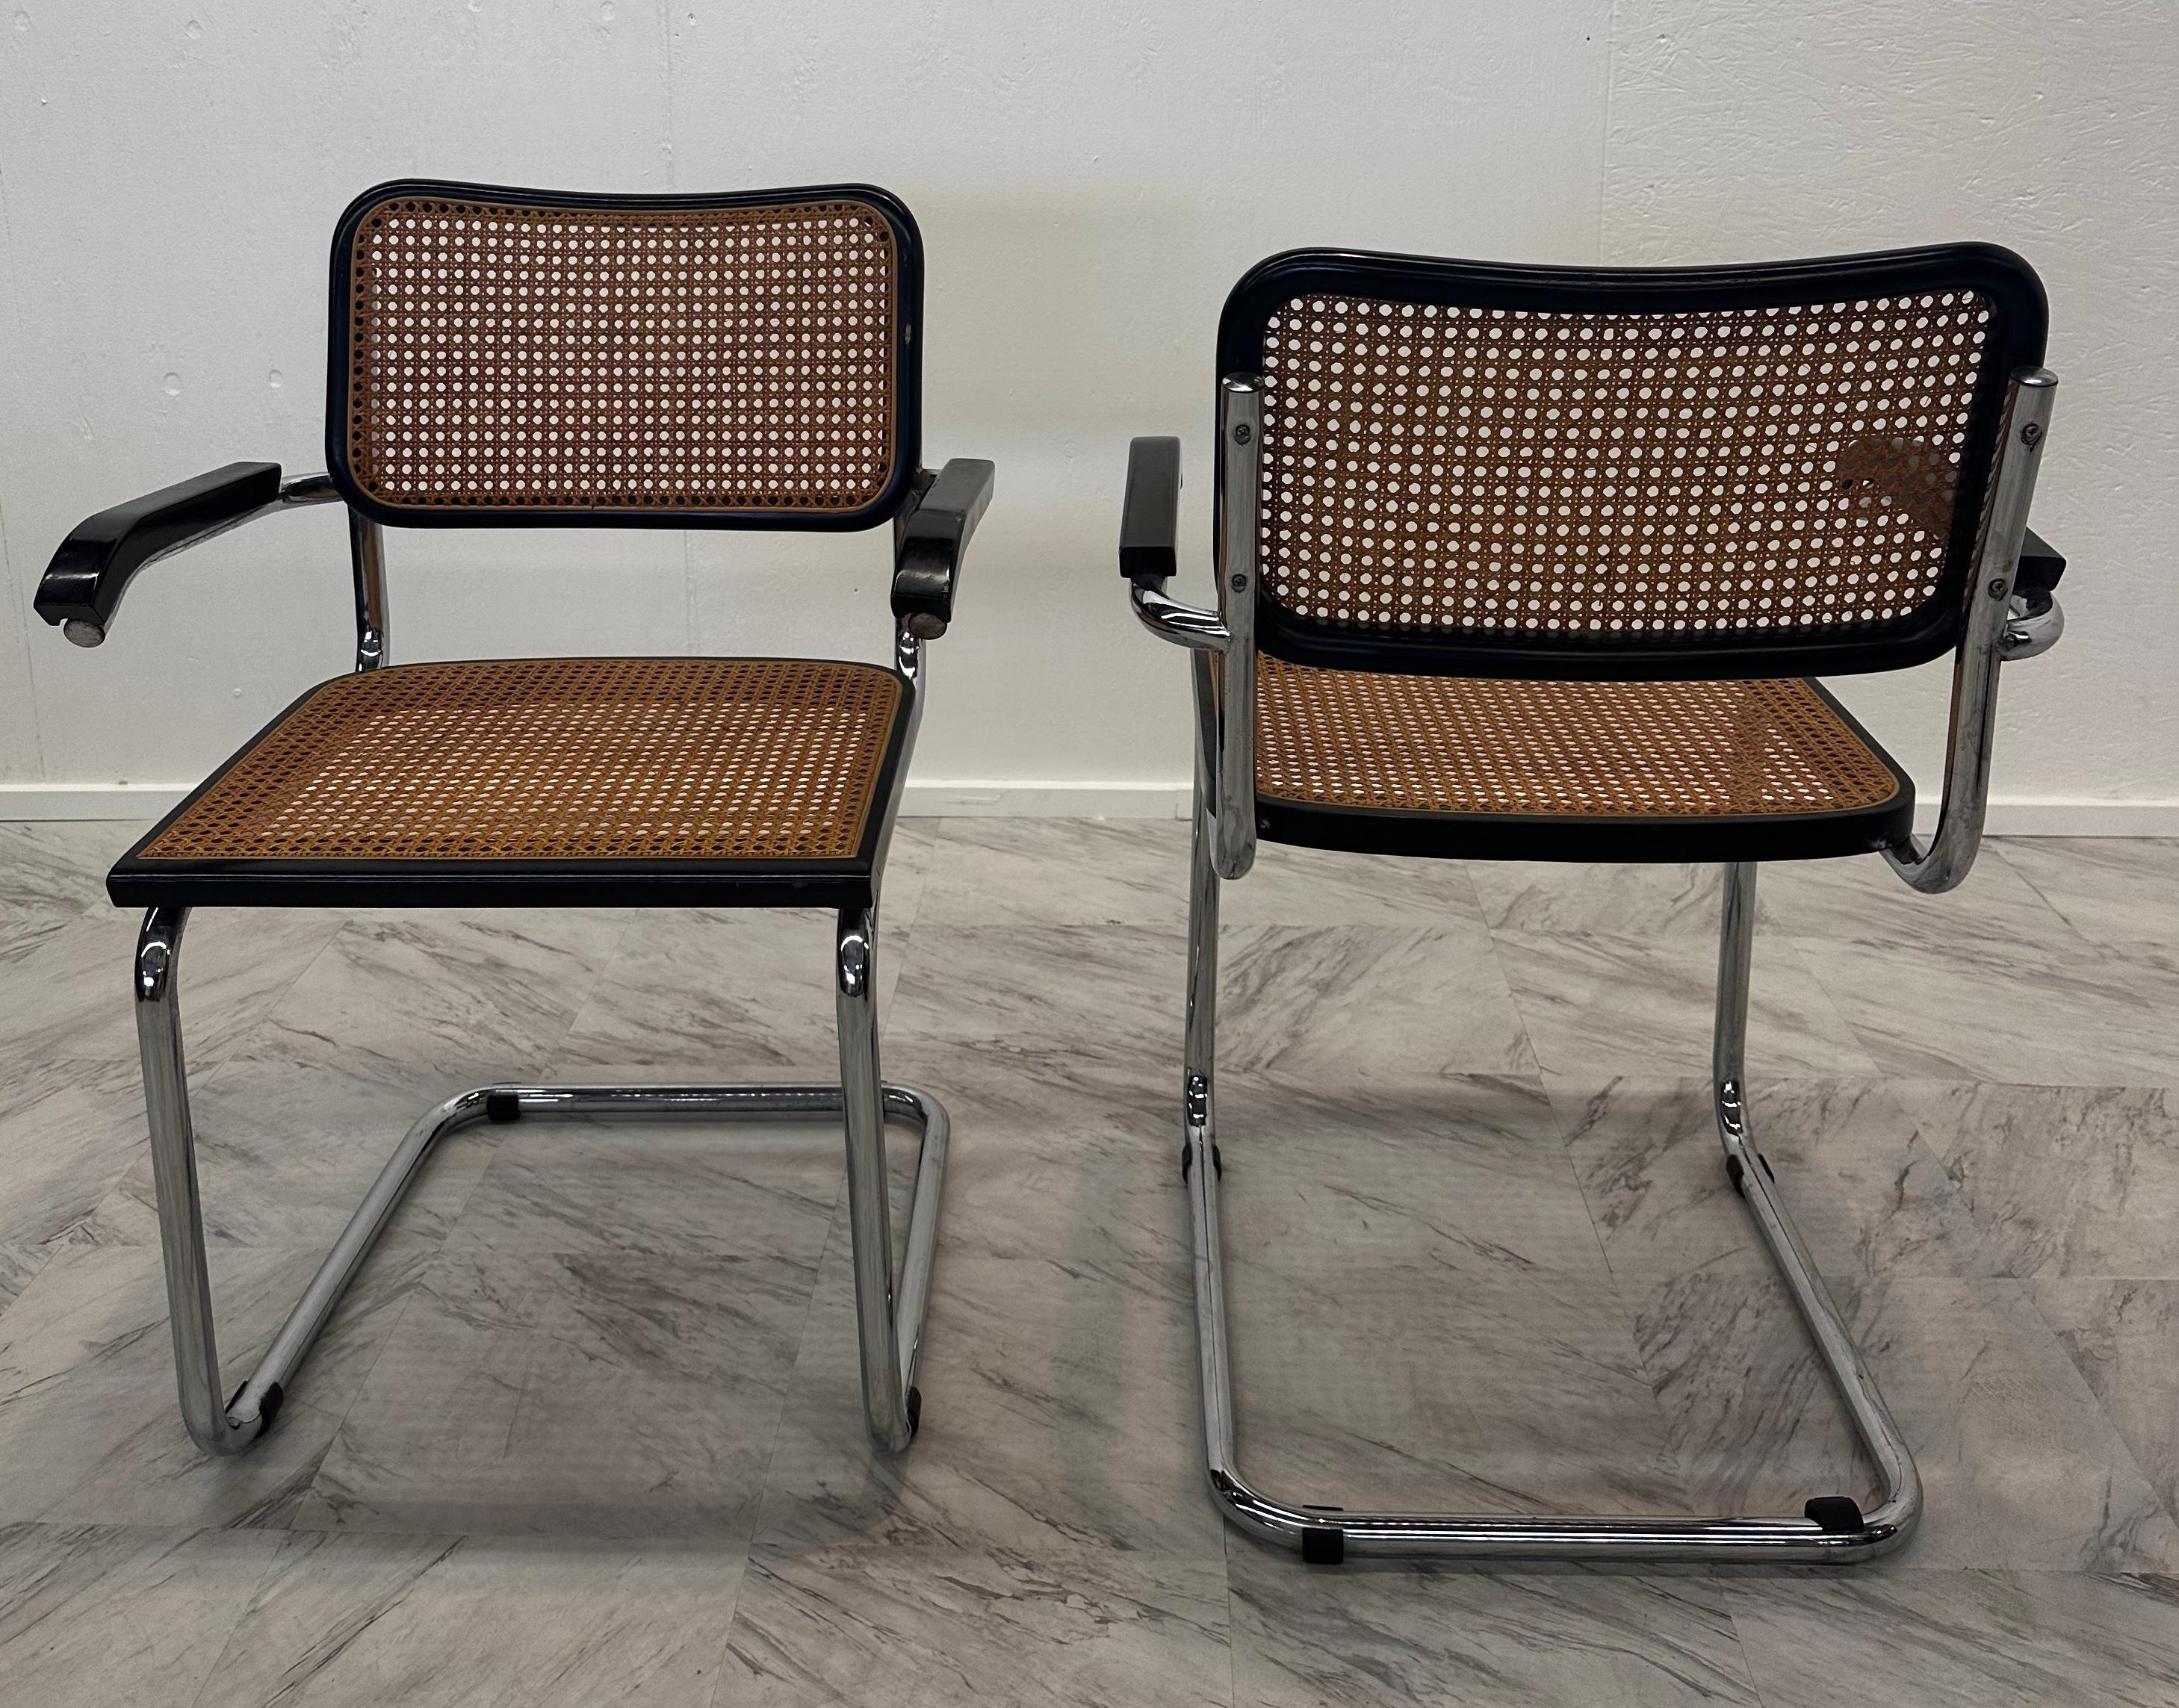 Paire de 4 chaises, modèle Cesca, conçues par Marcel Breuer. Fabriqué en Italie vers 1960 par le fabricant Gavina. Cadre en tube métallique, structure de l'assise et du dossier en bois et rotin. En bon état d'origine, avec une usure mineure conforme